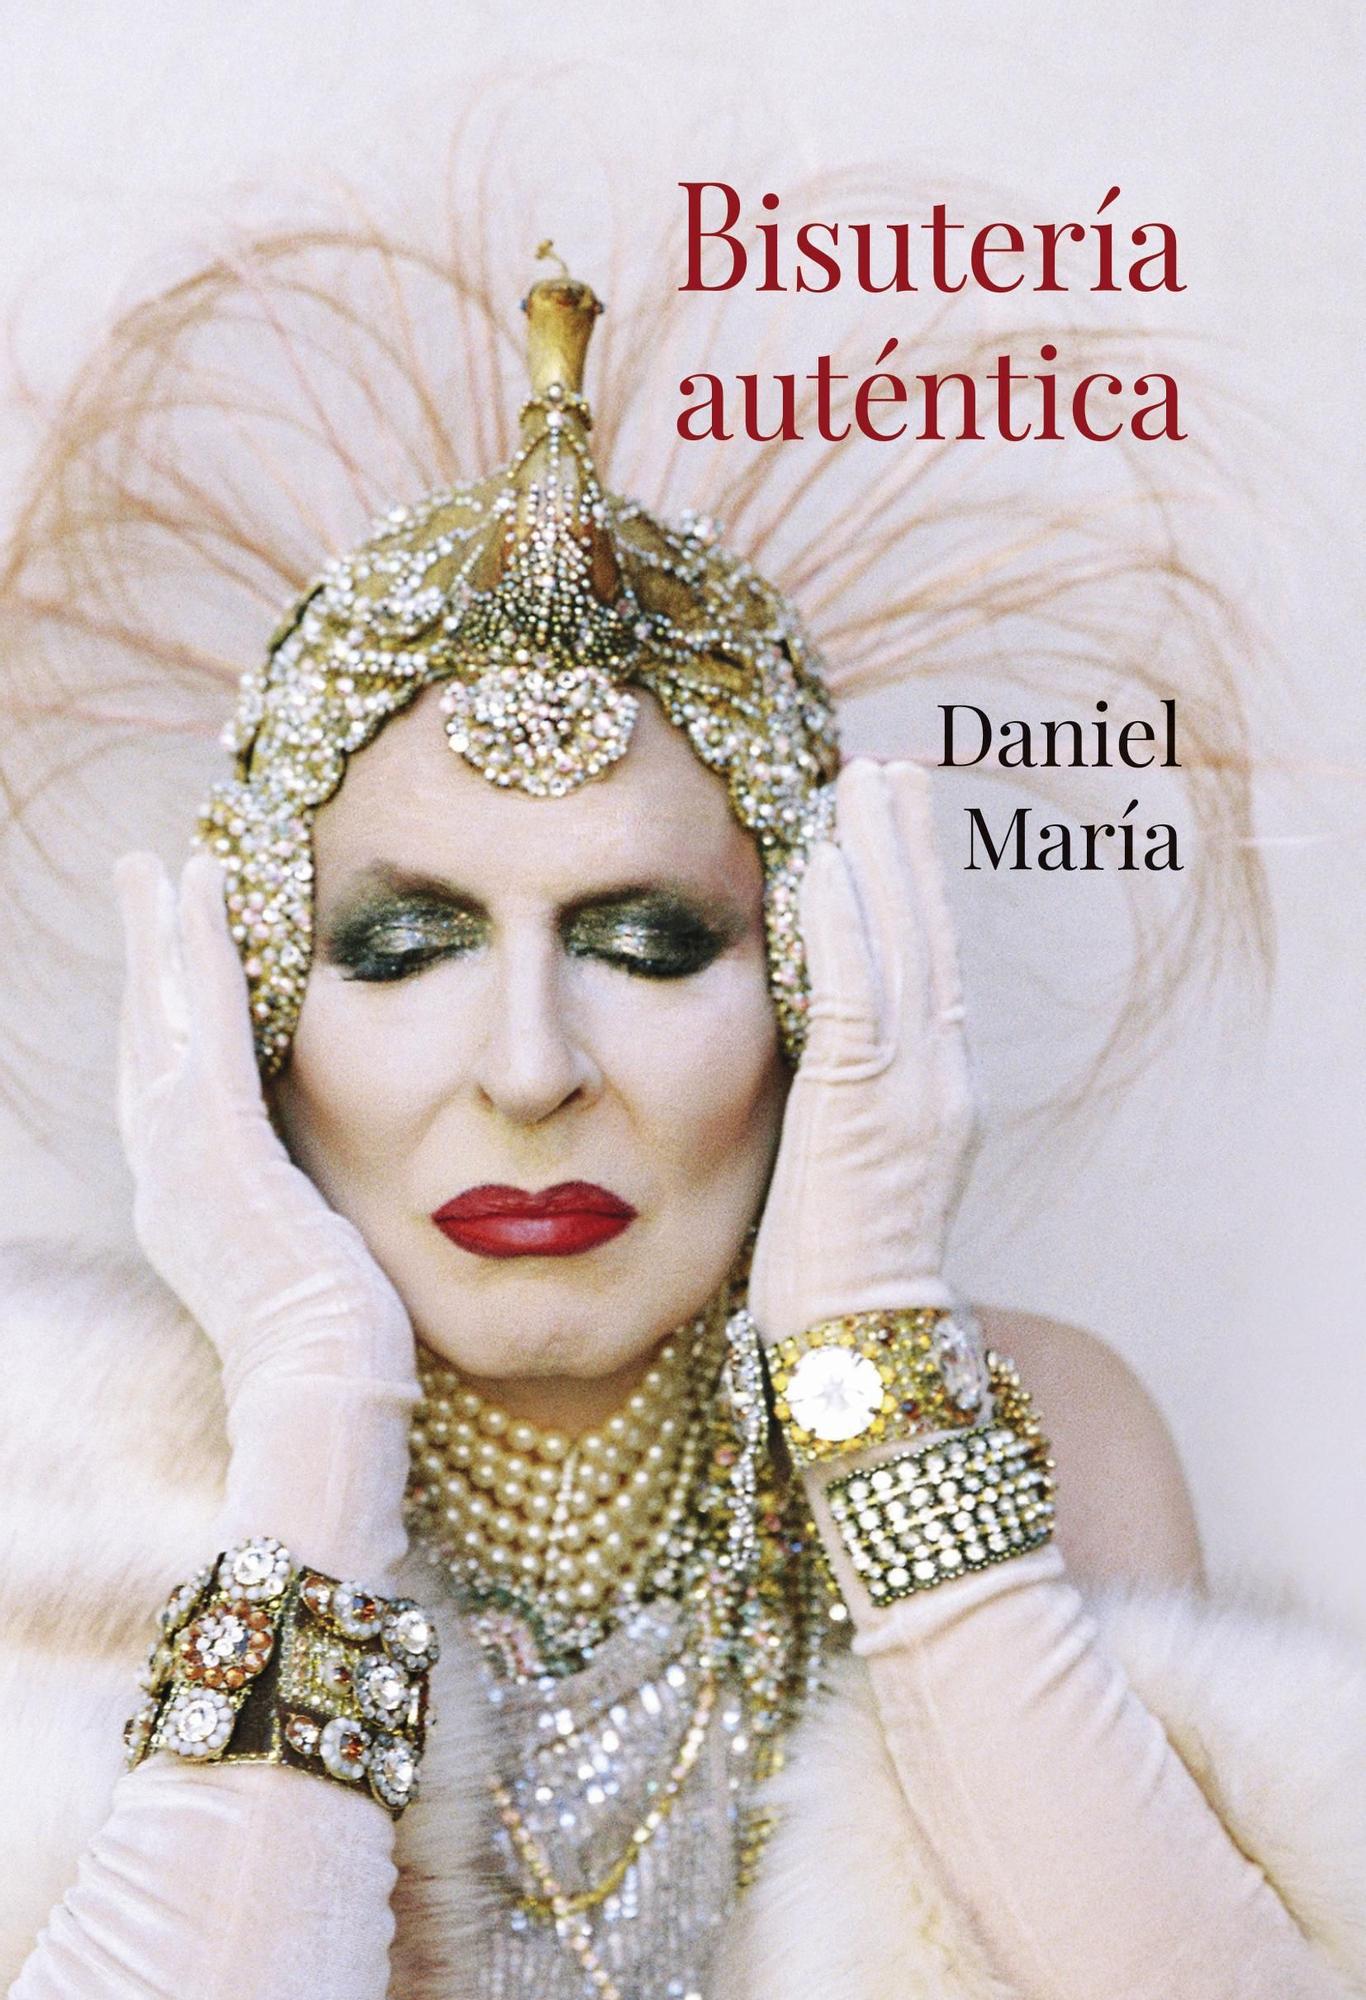 Portada &#039;Bisuteria autentica&#039;, nuevo libro del autor gomero Daniel María.